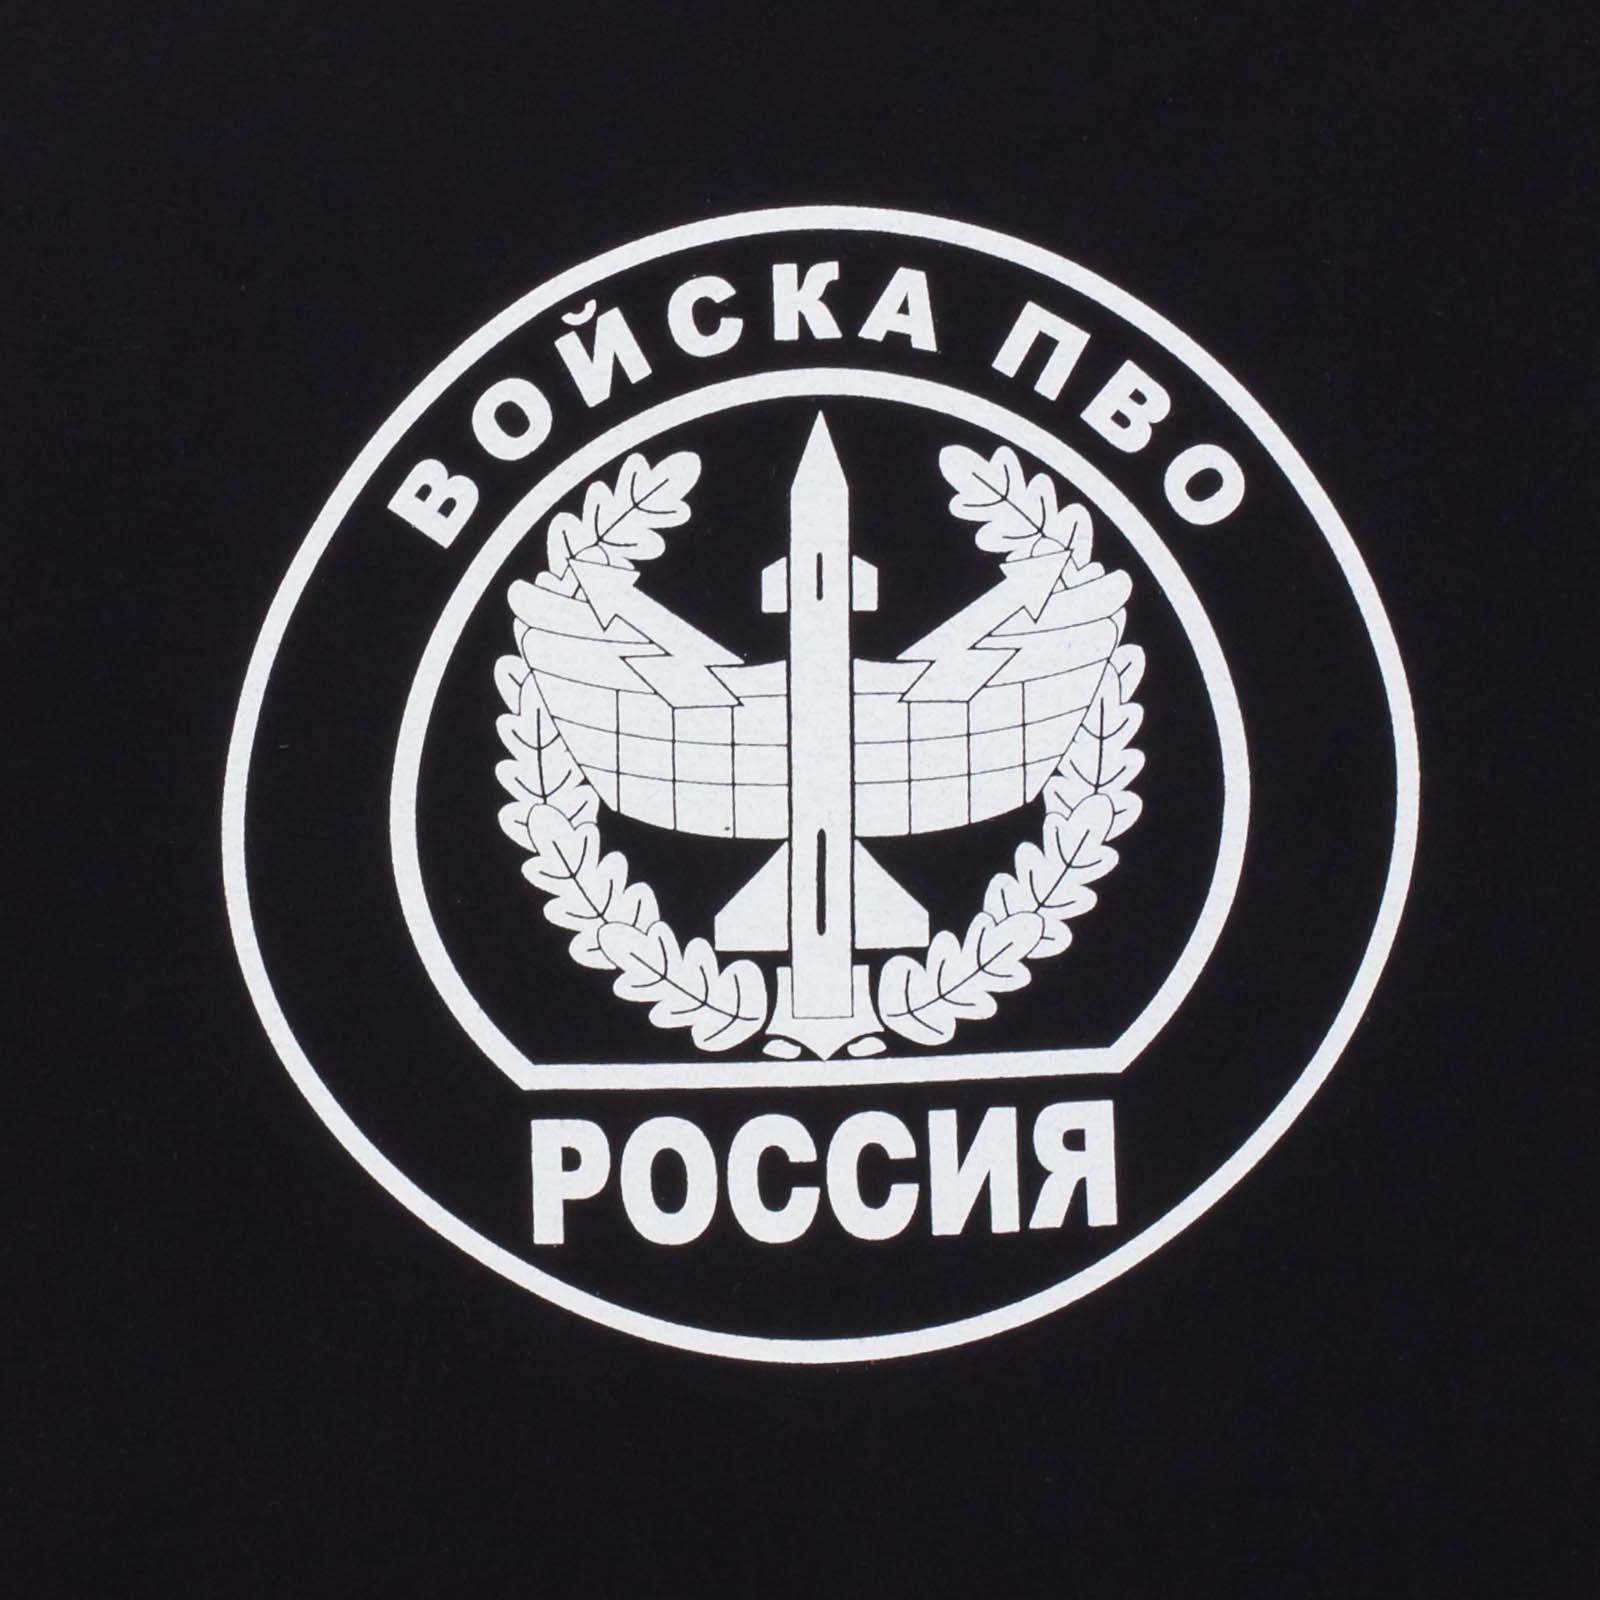 Мужская армейская футболка Войска ПВО. 